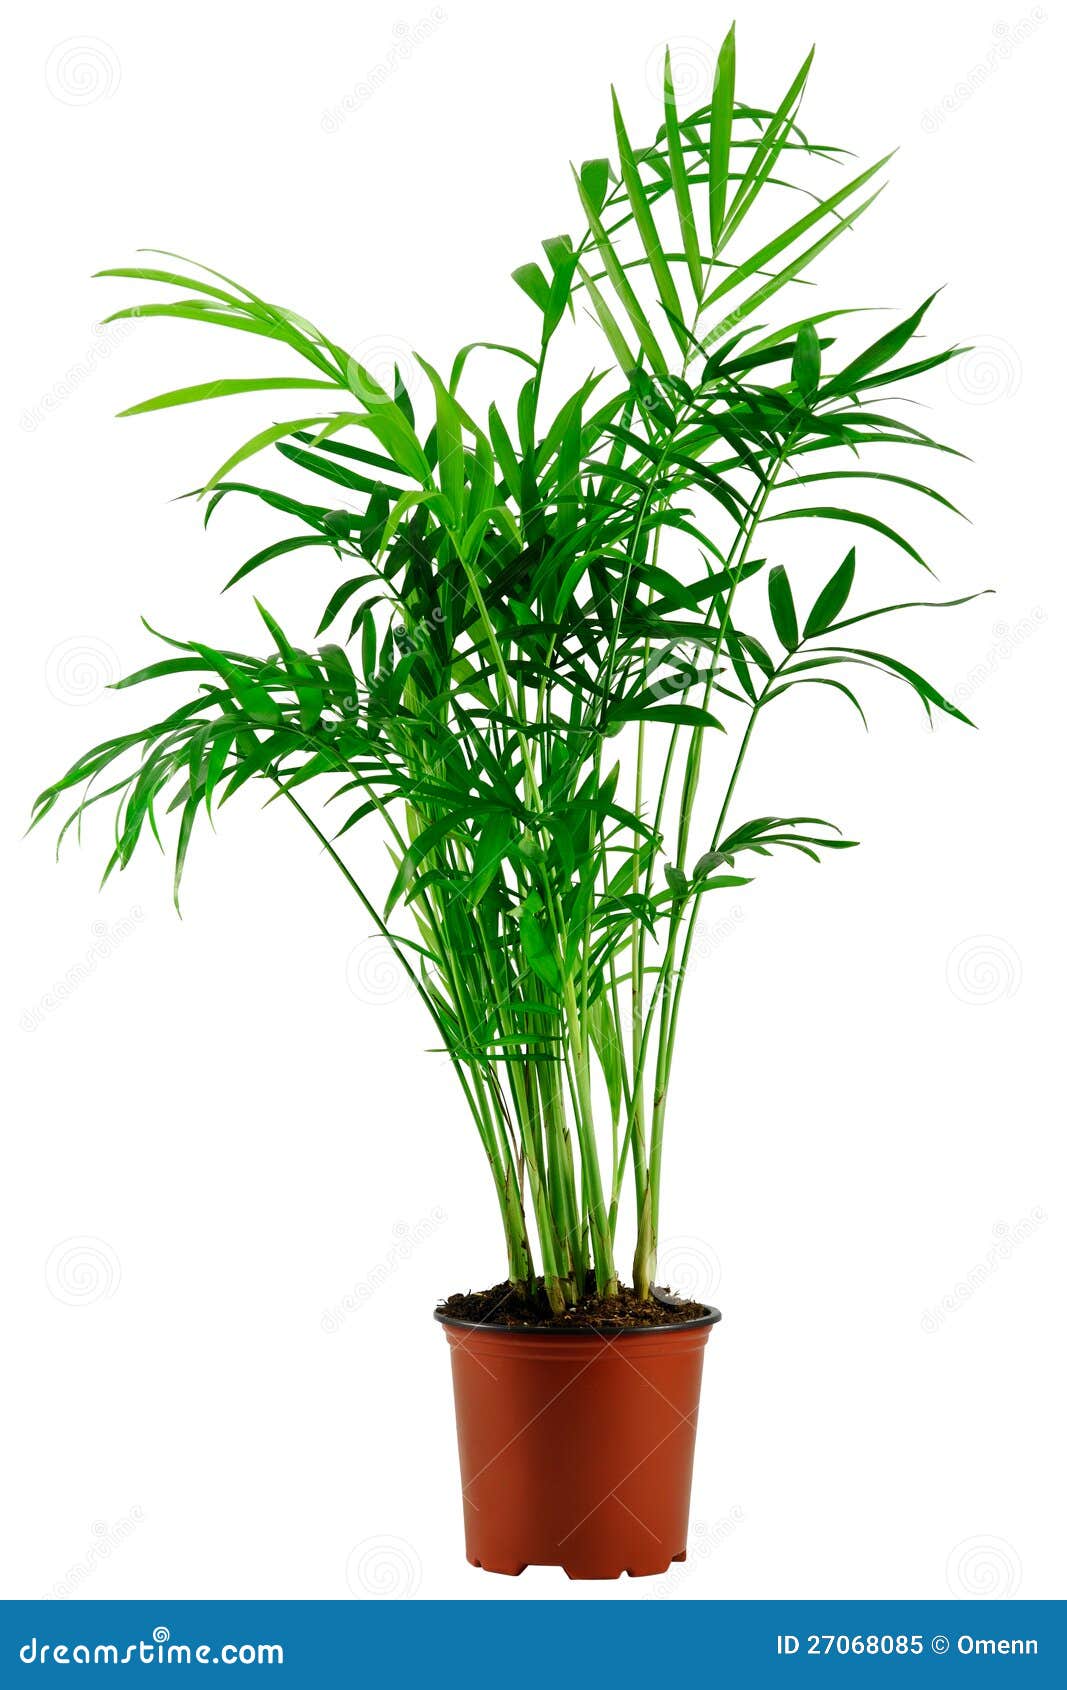 green howea palm-tree in flowerpot